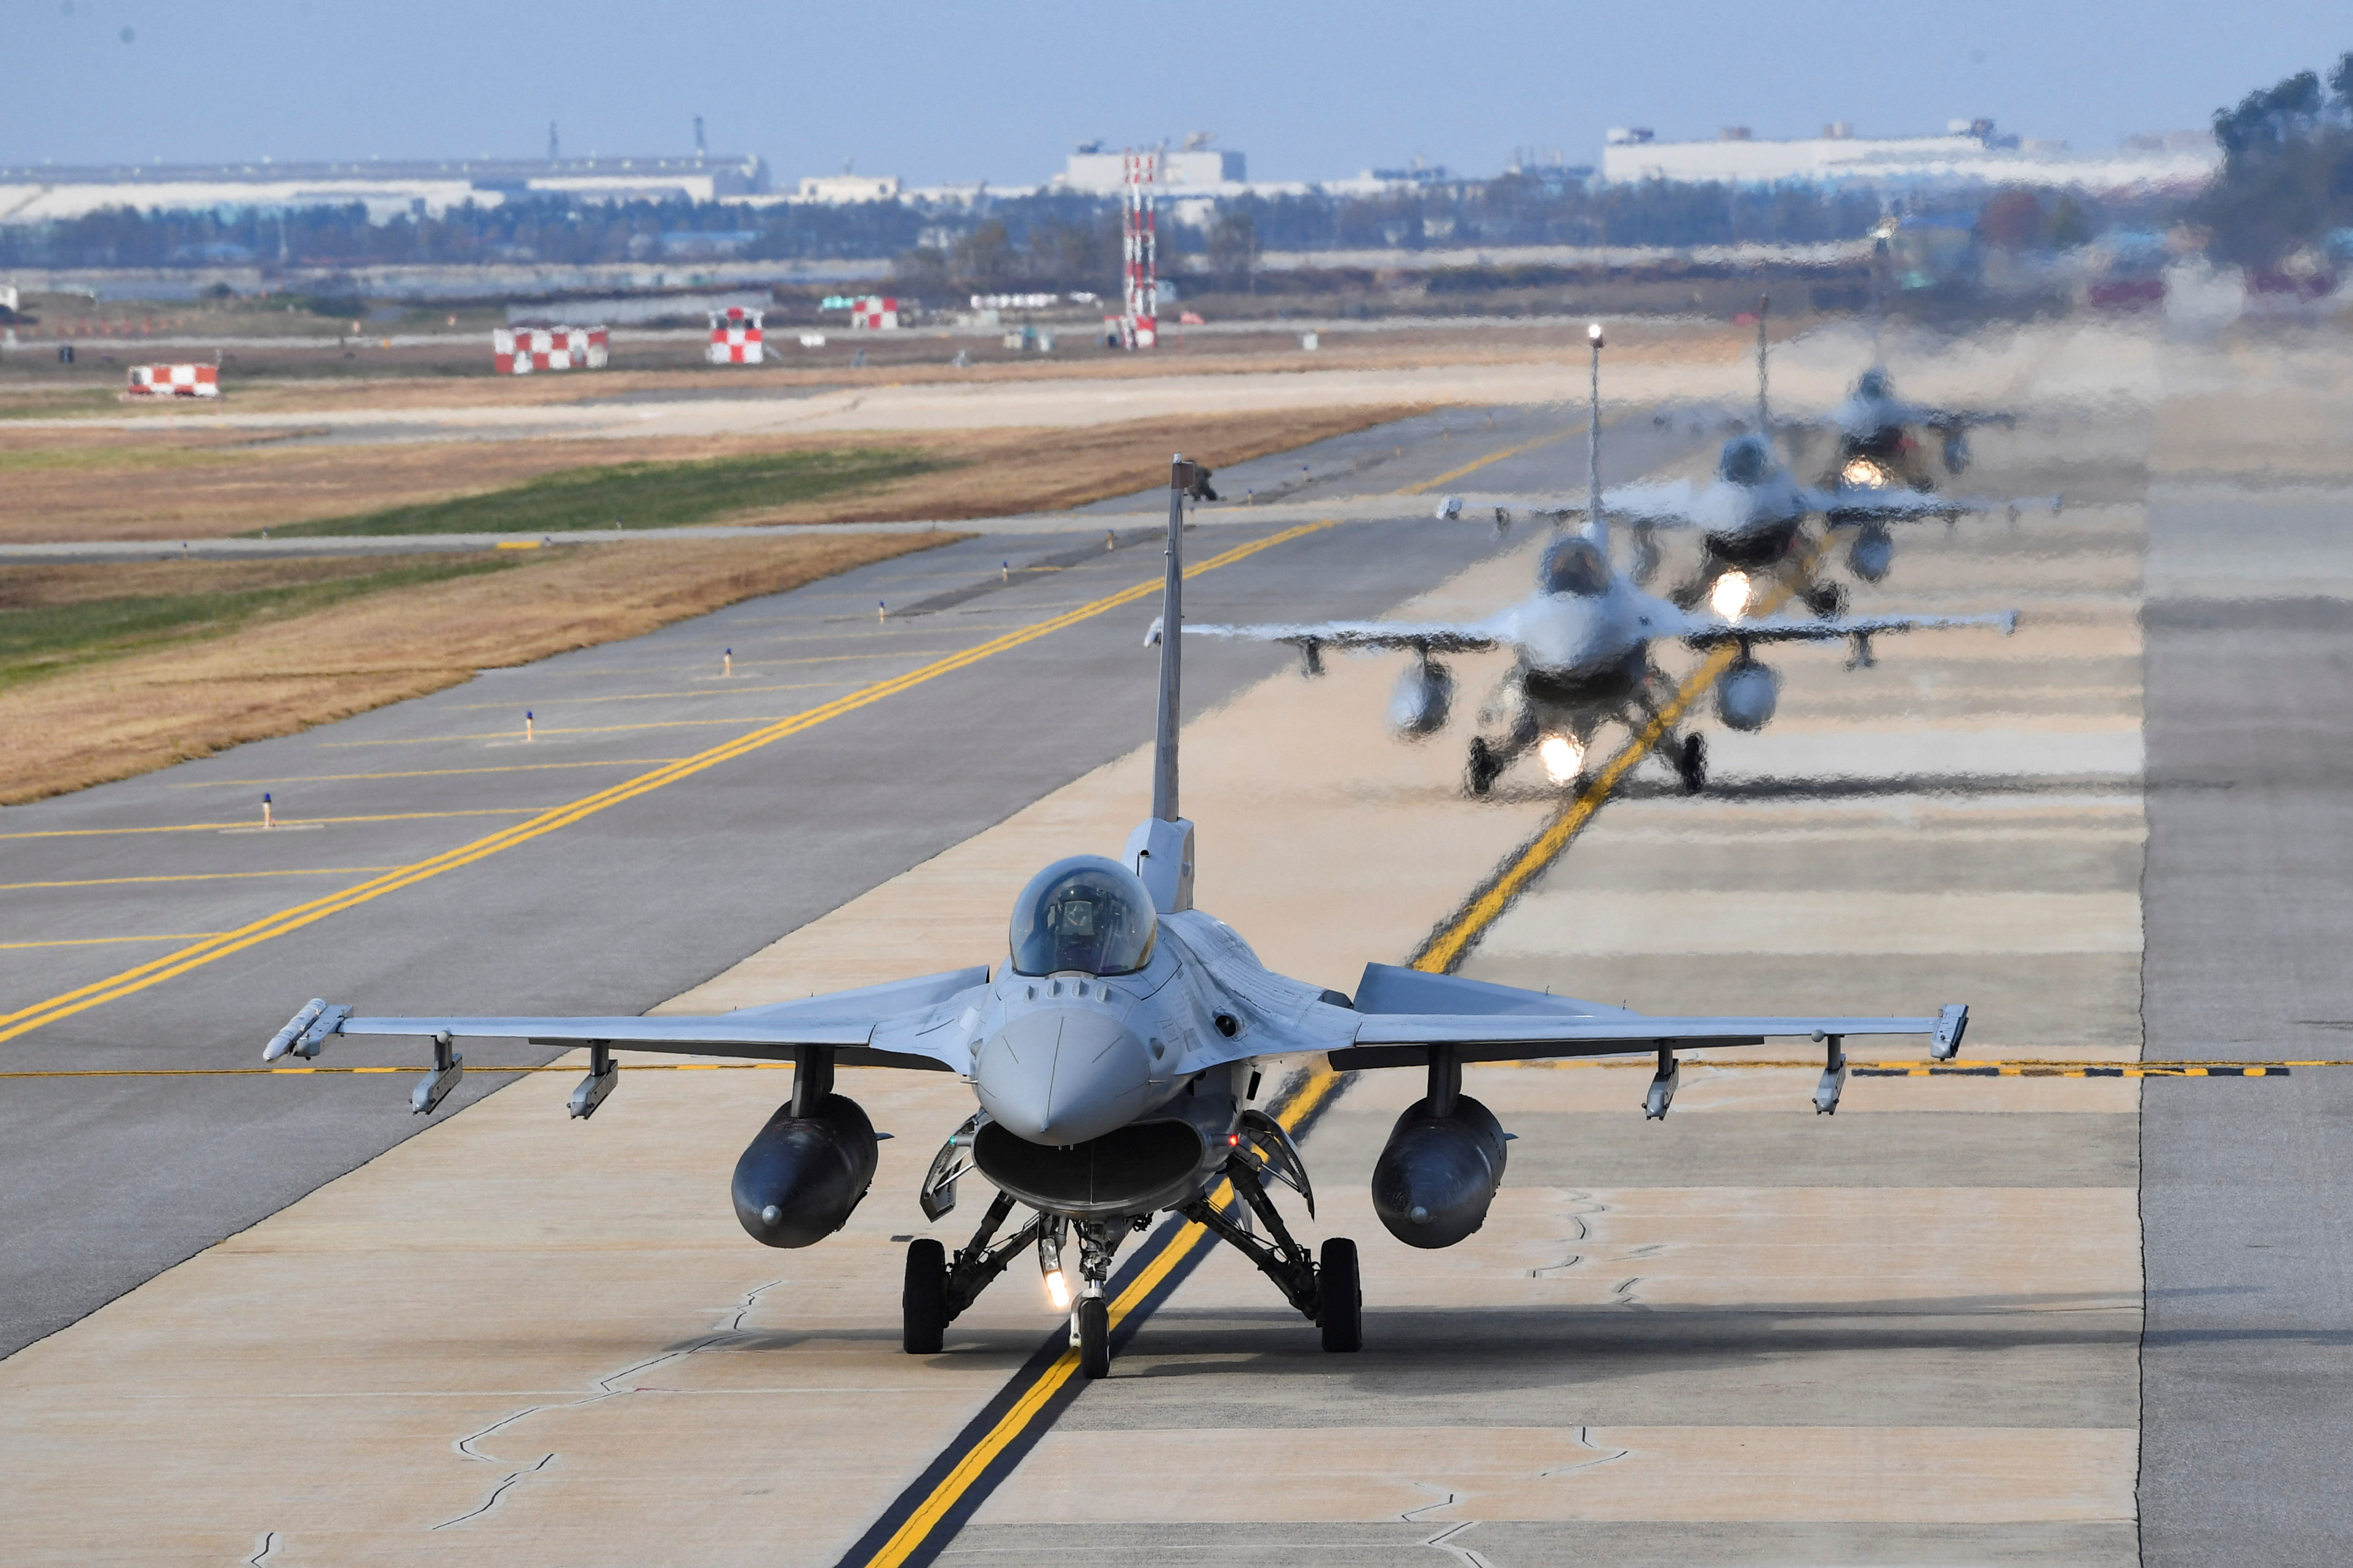 “Vigilant storm” es el mayor ejercicio aéreo combinado de Corea del Sur y EEUU desde 2017 e incluye la movilización de cazas F-15, F-16, EA-18G (la versión del cazabombardero F-18 adaptada para escenarios de guerra electrónica), F-35A y F-35B, que a diferencia del F-35A puede realizar despegues en corto y despegues y aterrizajes en vertical. (REUTERS)